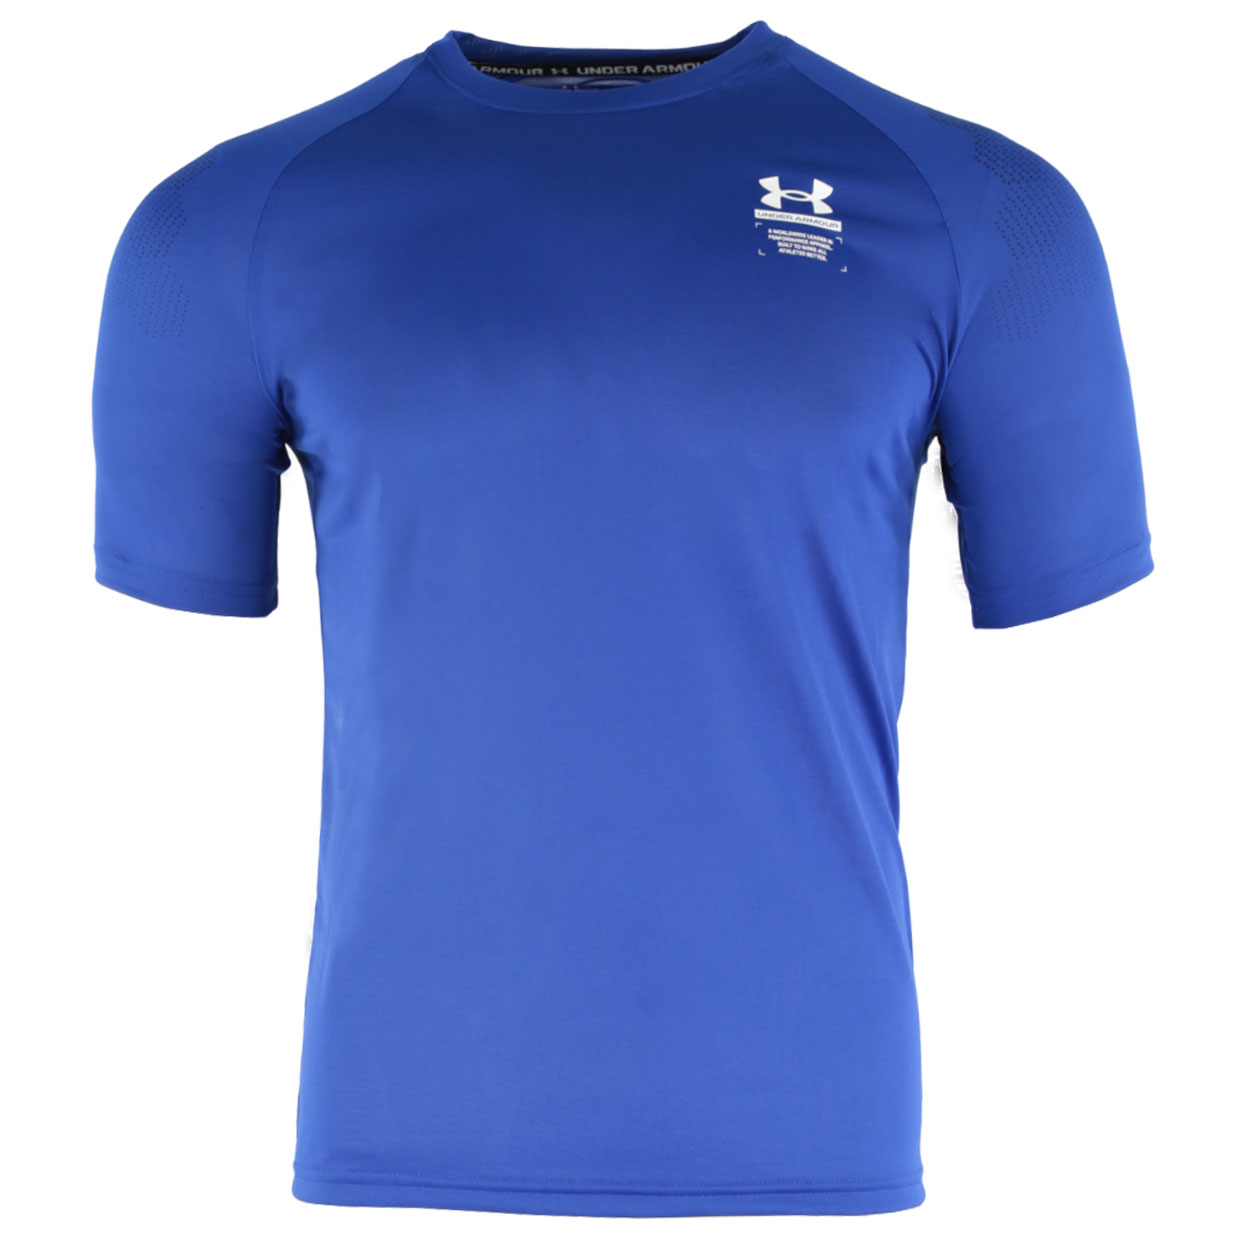 und Fitnesskleidung Sweatshirts Herren Bekleidung Sport- Under Armour Funktionsshirt in Blau für Herren Training 